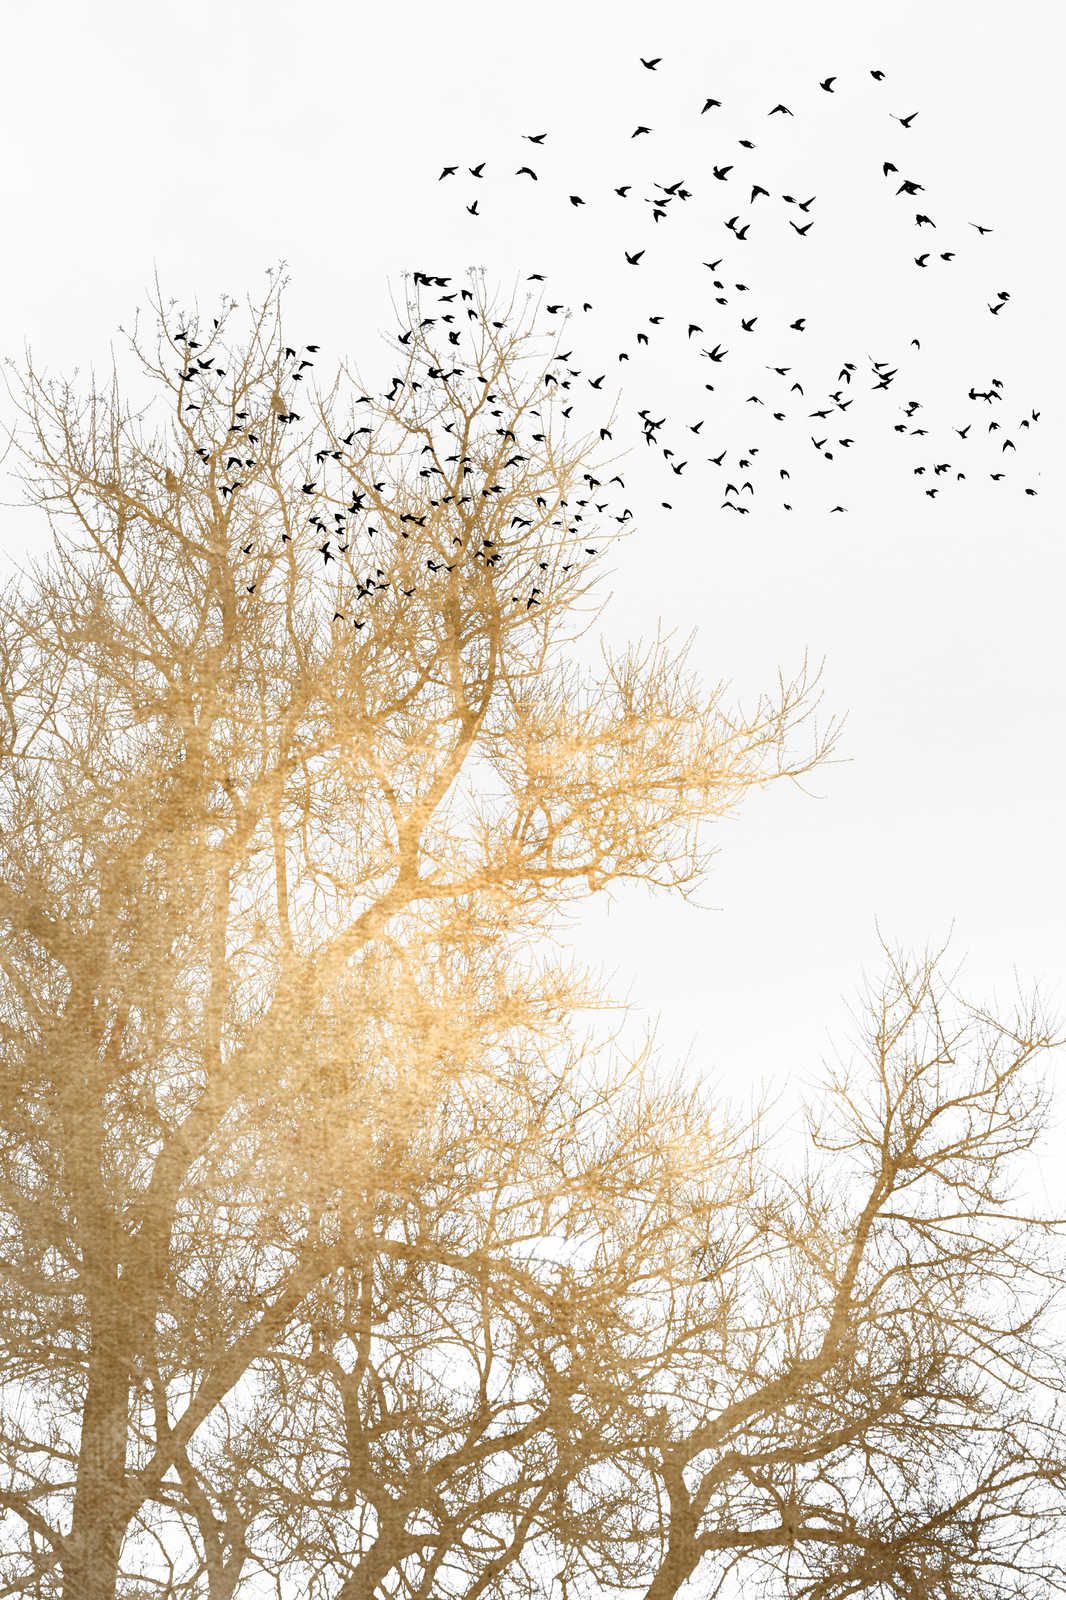             Toile avec arbres dorés et vol d'oiseaux - 0,90 m x 0,60 m
        